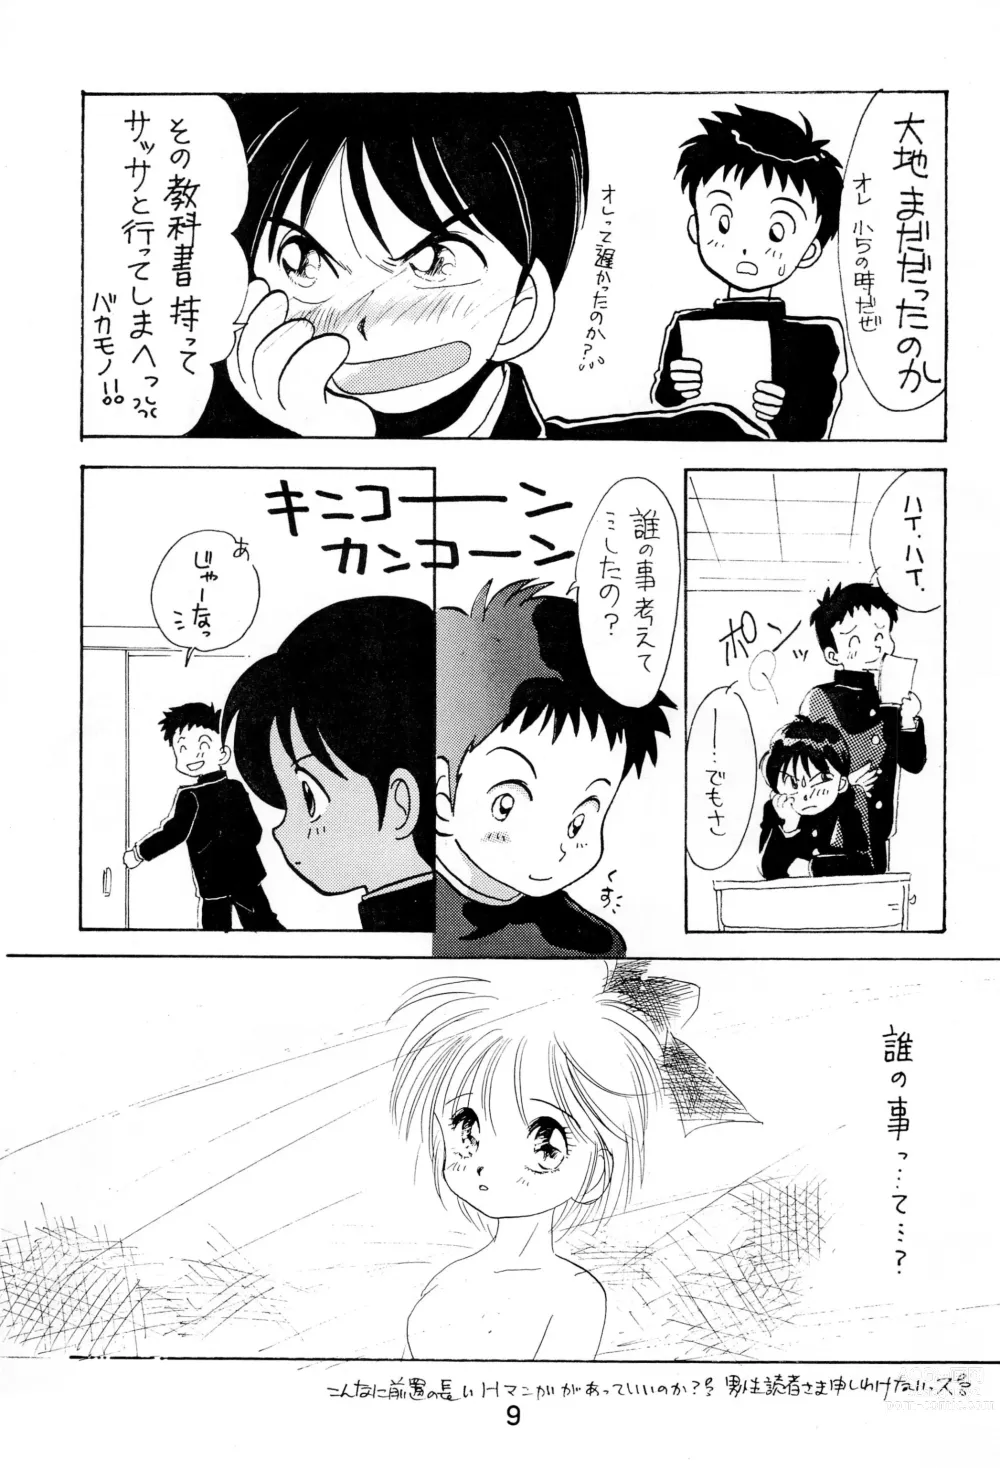 Page 9 of doujinshi Uwasa no Himeko